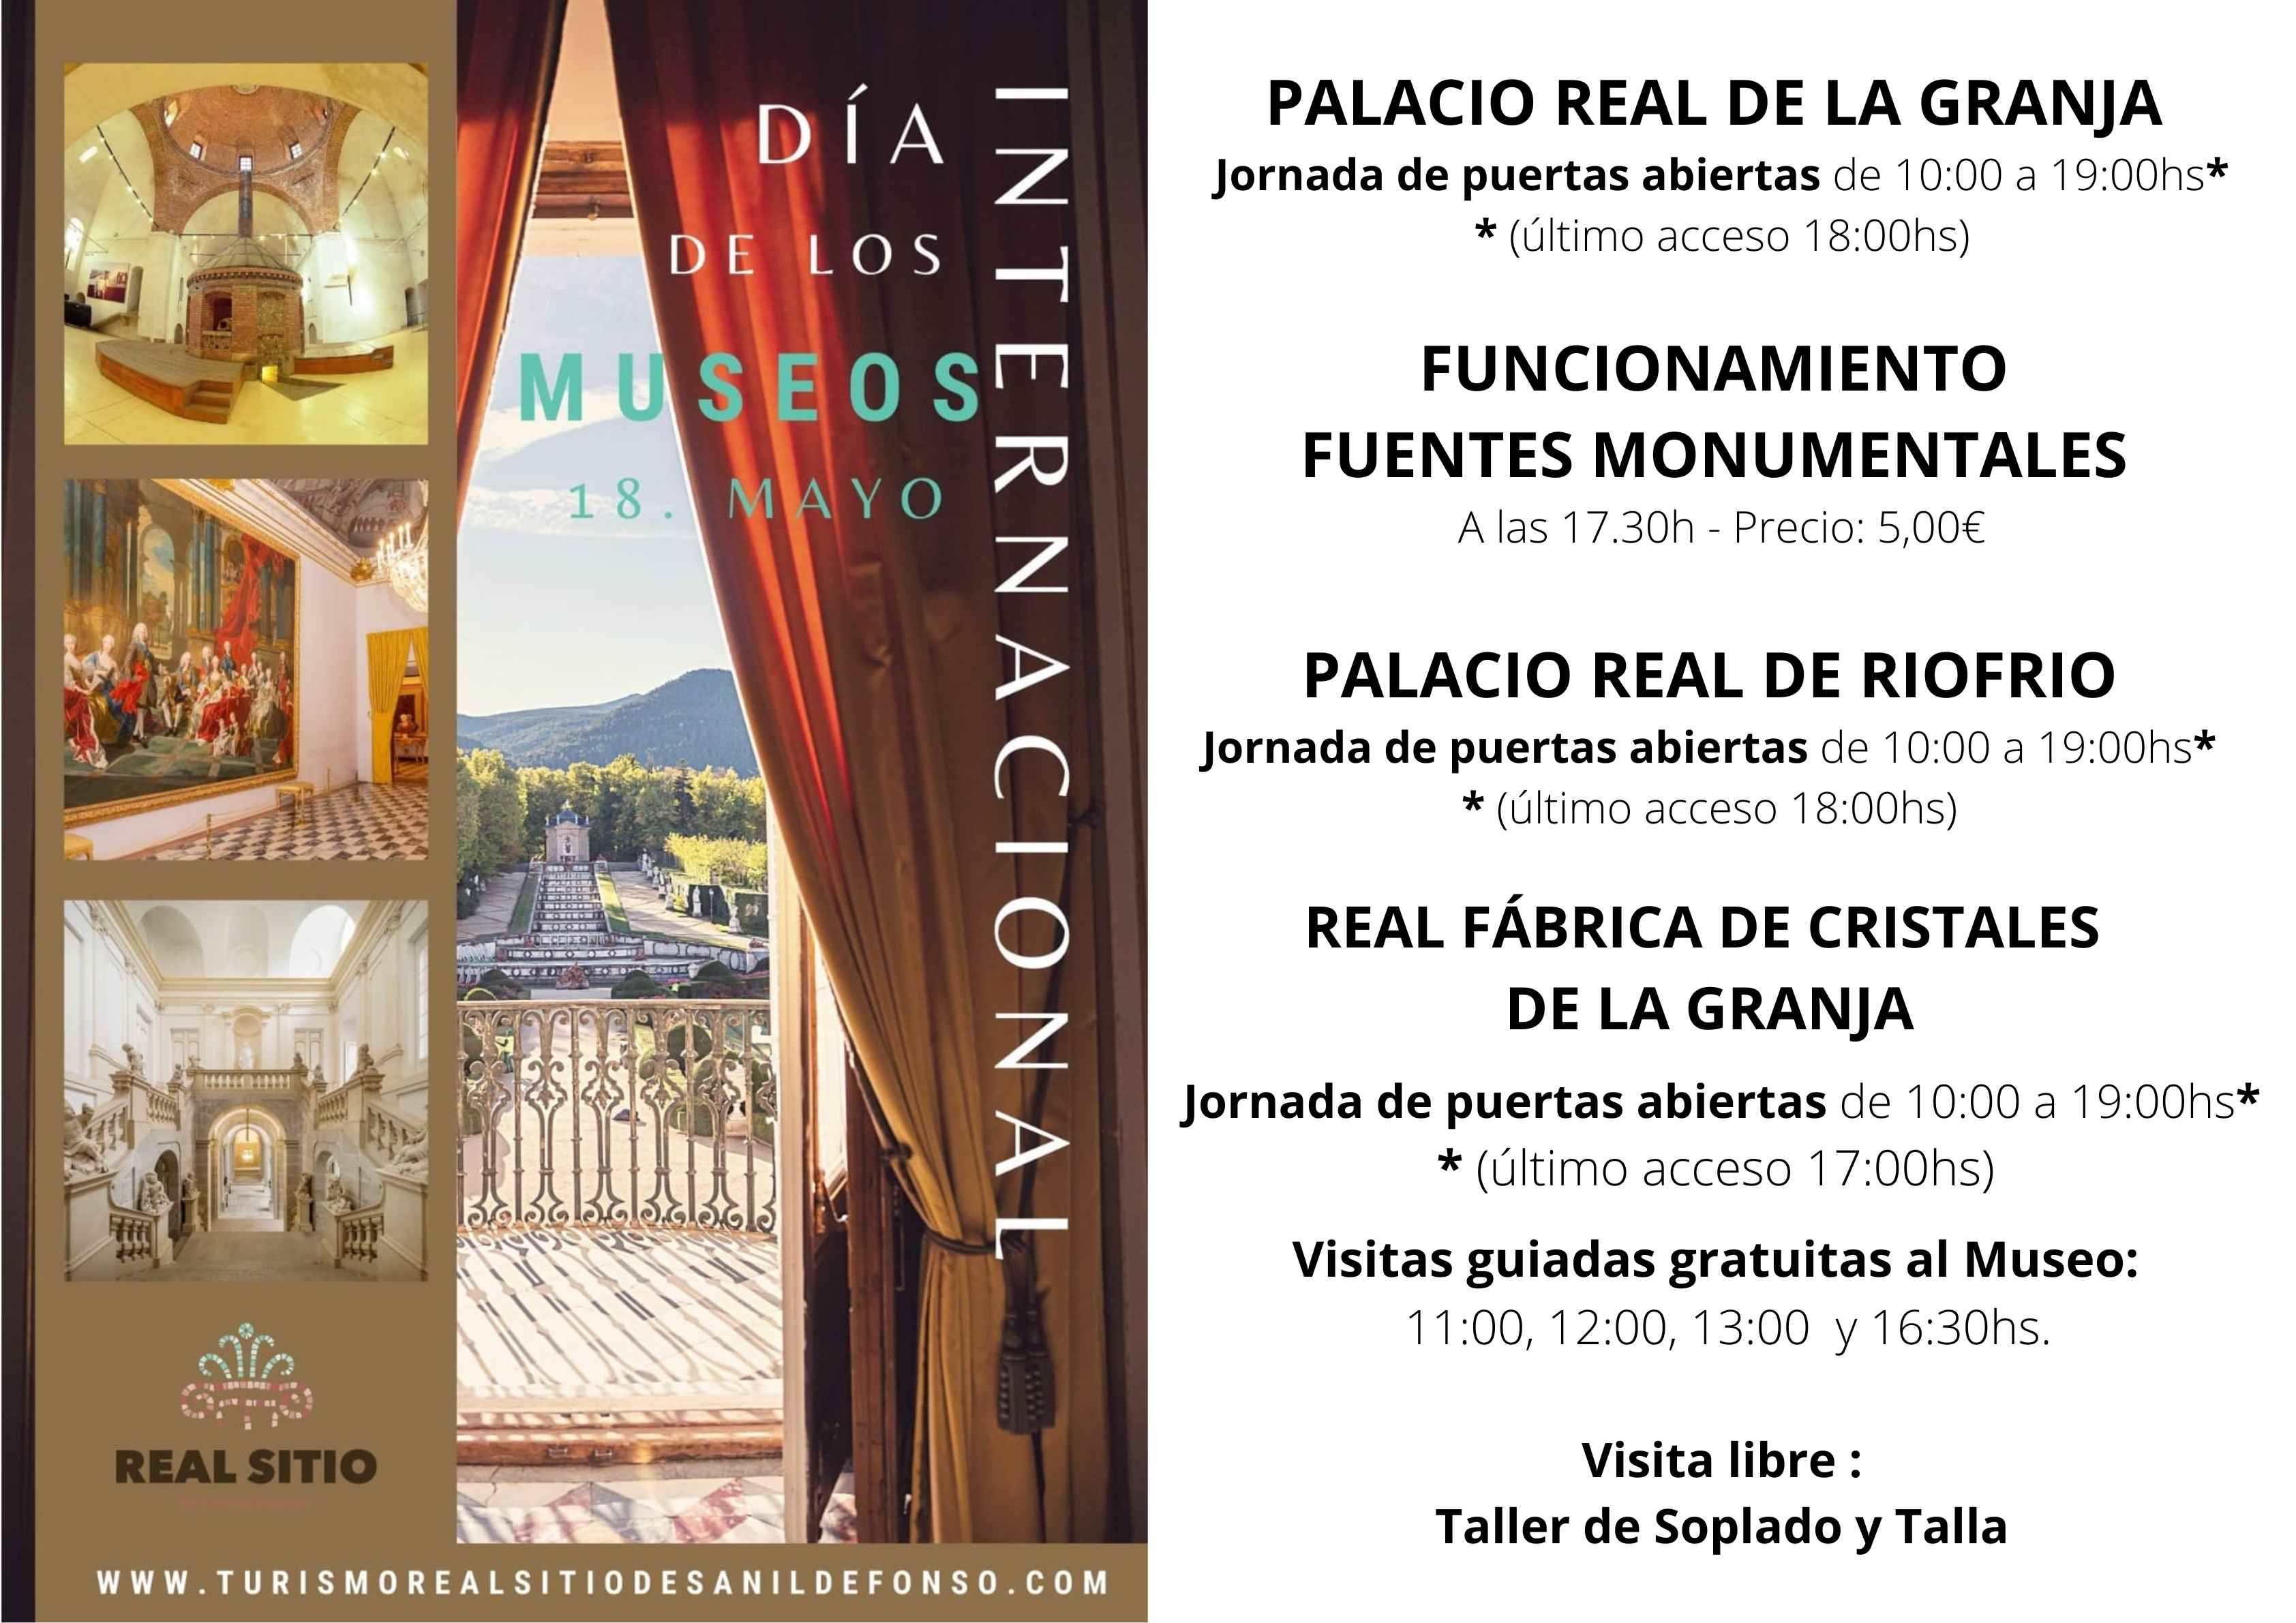 PALACIO_REAL_DE_LA_GRANJA_Y_RIOFRIO_Jornada_de_puertas_abiertas.jpg